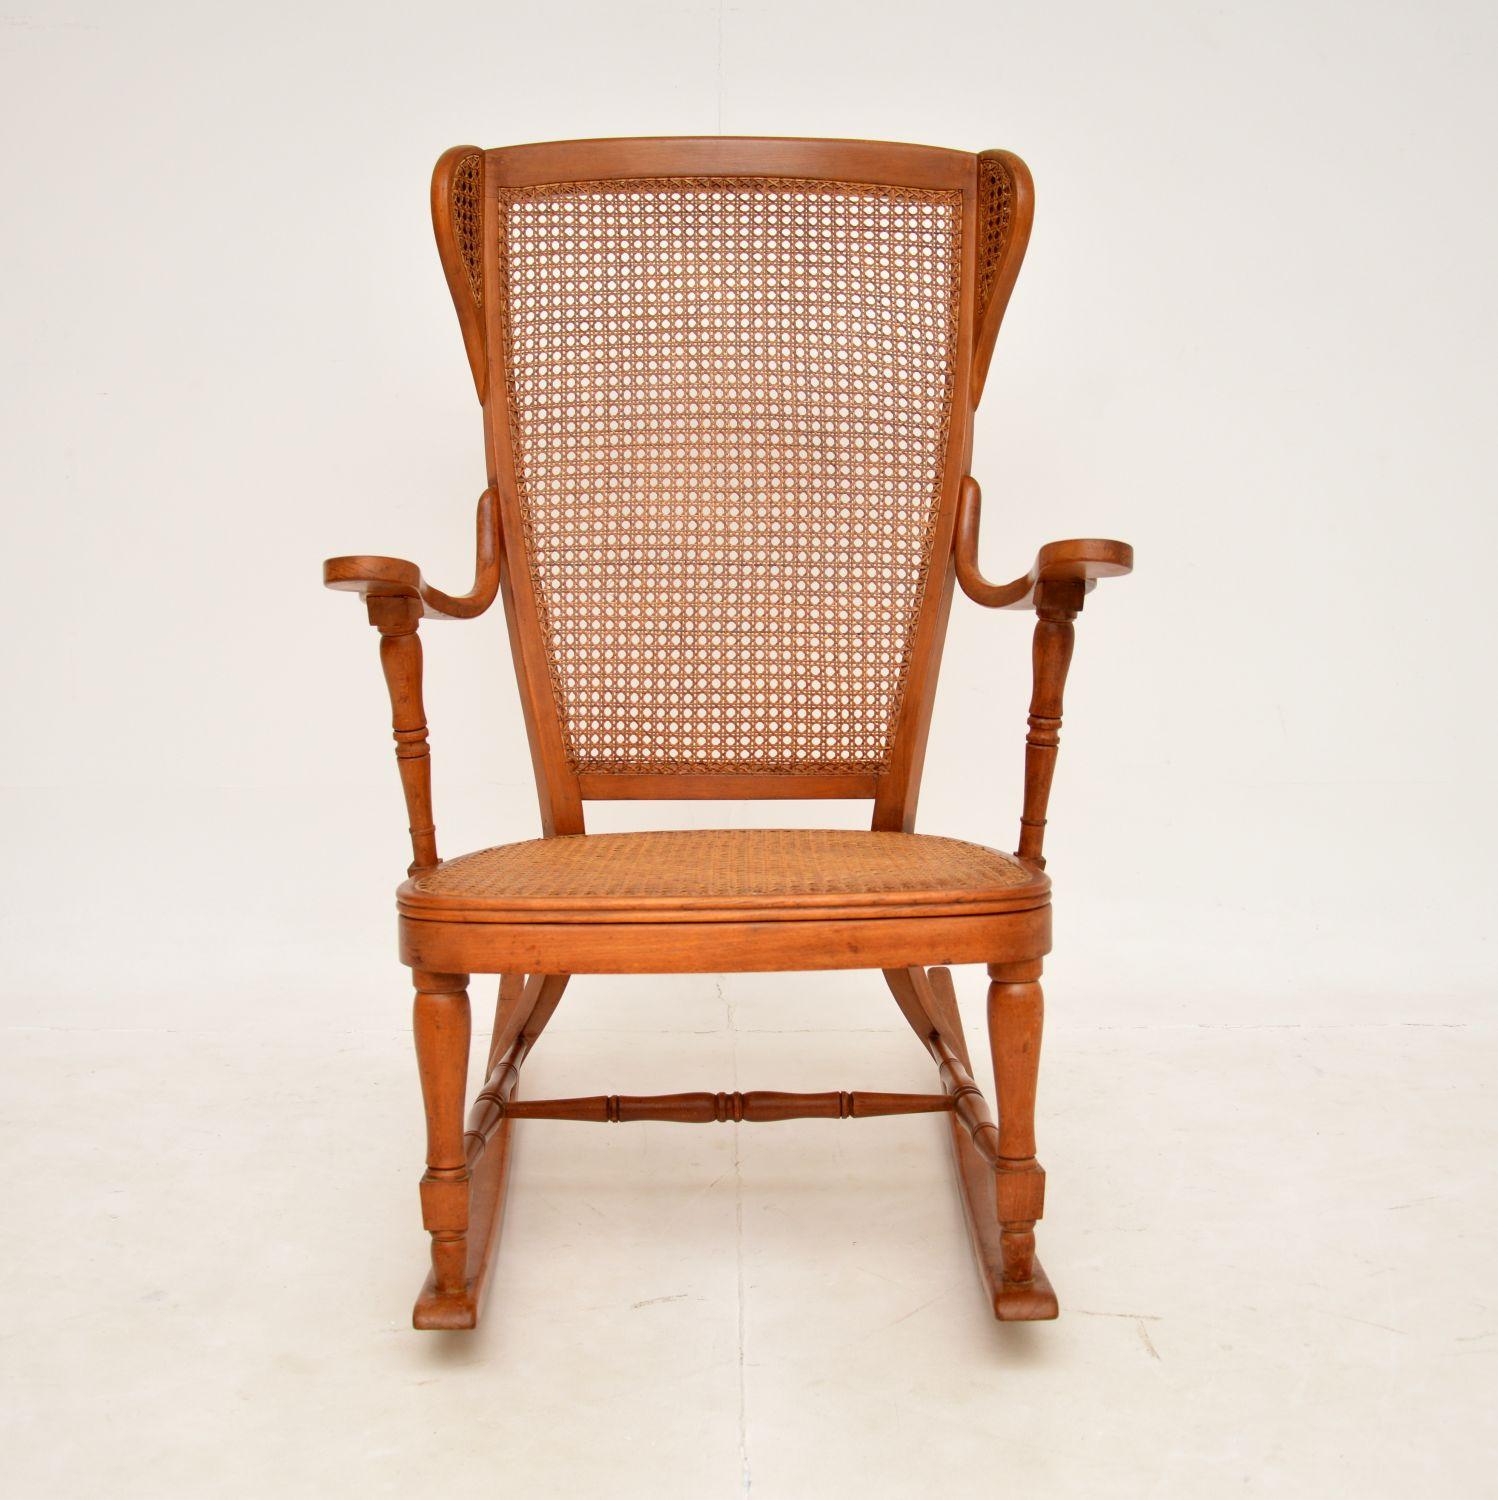 Cette belle chaise à bascule ancienne a été fabriquée en France et date de la période 1900-1920.

Il est magnifiquement réalisé, le cadre est une combinaison de bois massif tourné et plié à la vapeur. L'assise et le dossier sont cannelés, le dossier